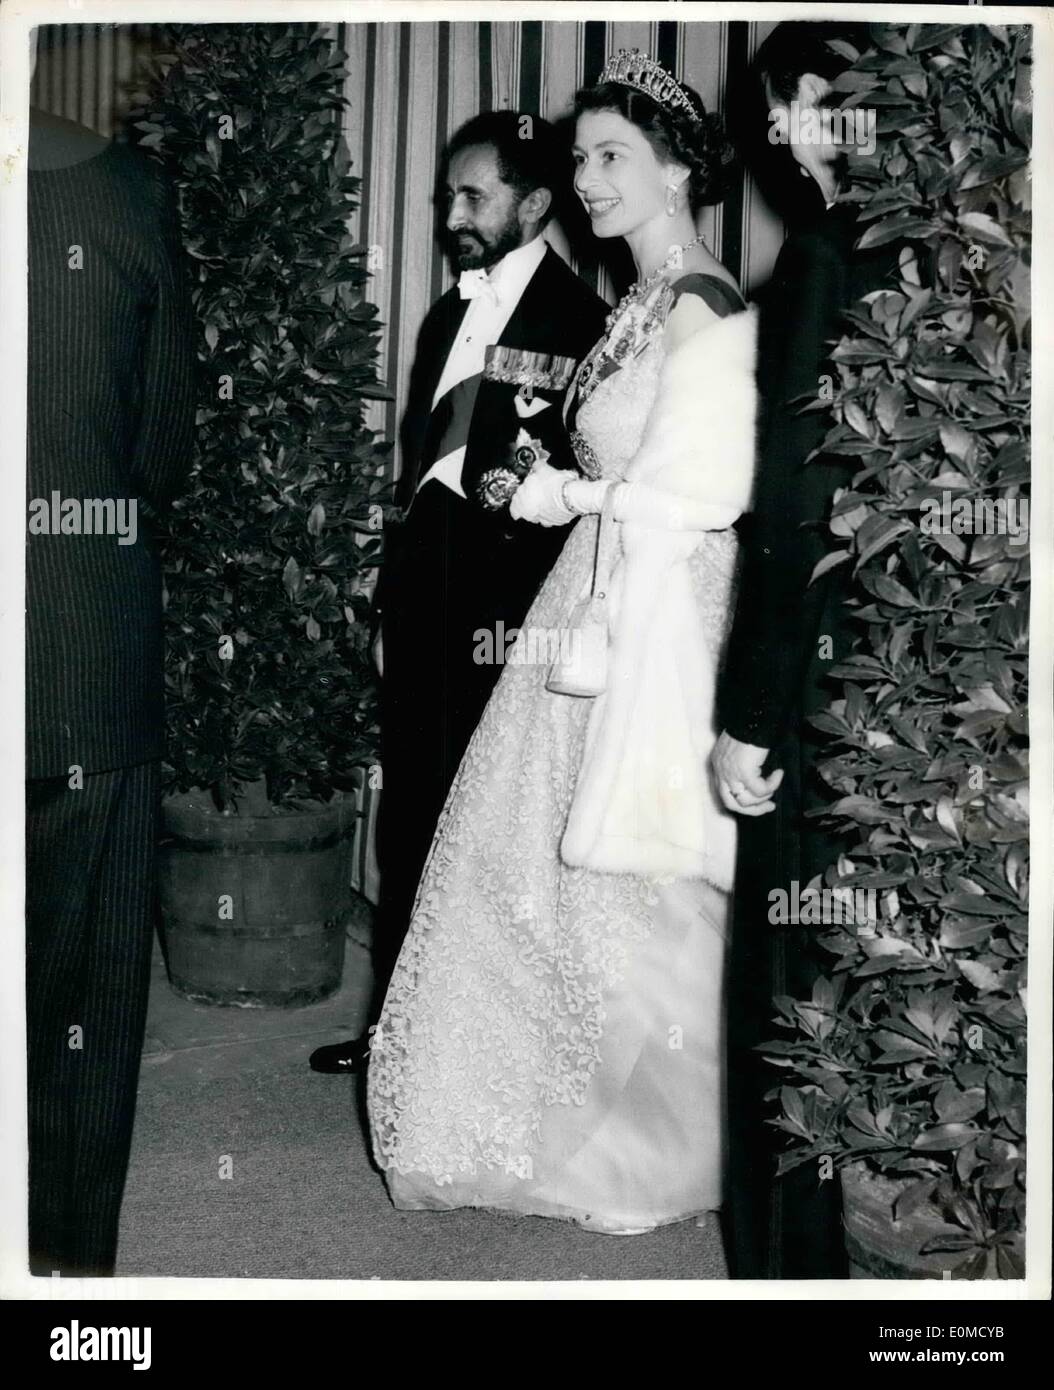 Ottobre 10, 1954 - L'imperatore e la Regina Cena presso ambasciata etiopica: mostra fotografica di Haile Selassie - il Emperior di Etiopia - accompagnatrici H.M. La Regina ha lasciato l'ambasciata etiopica, Londra la scorsa notte dopo la cena detenute dall'Emperior in onore della regina. Foto Stock